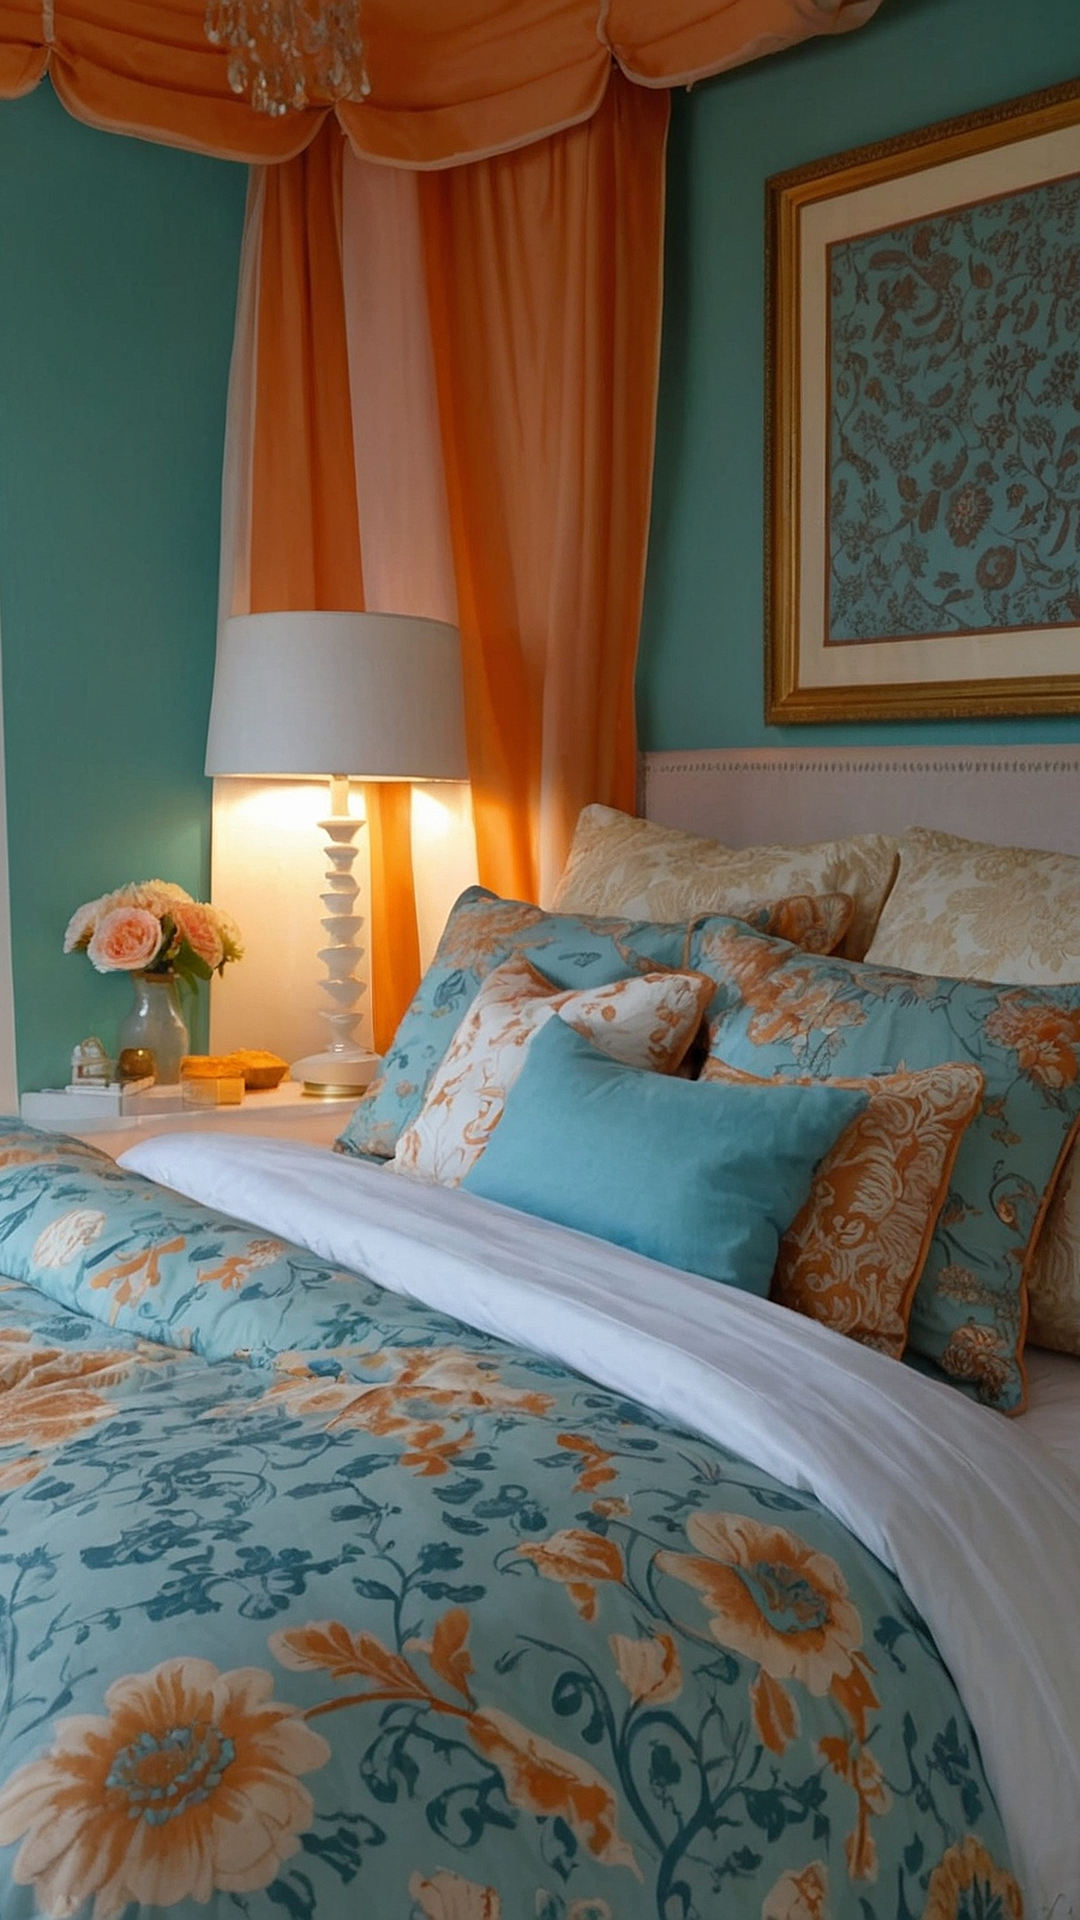 Sleep Easy & Stylishly: Bedroom Refresh Ideas